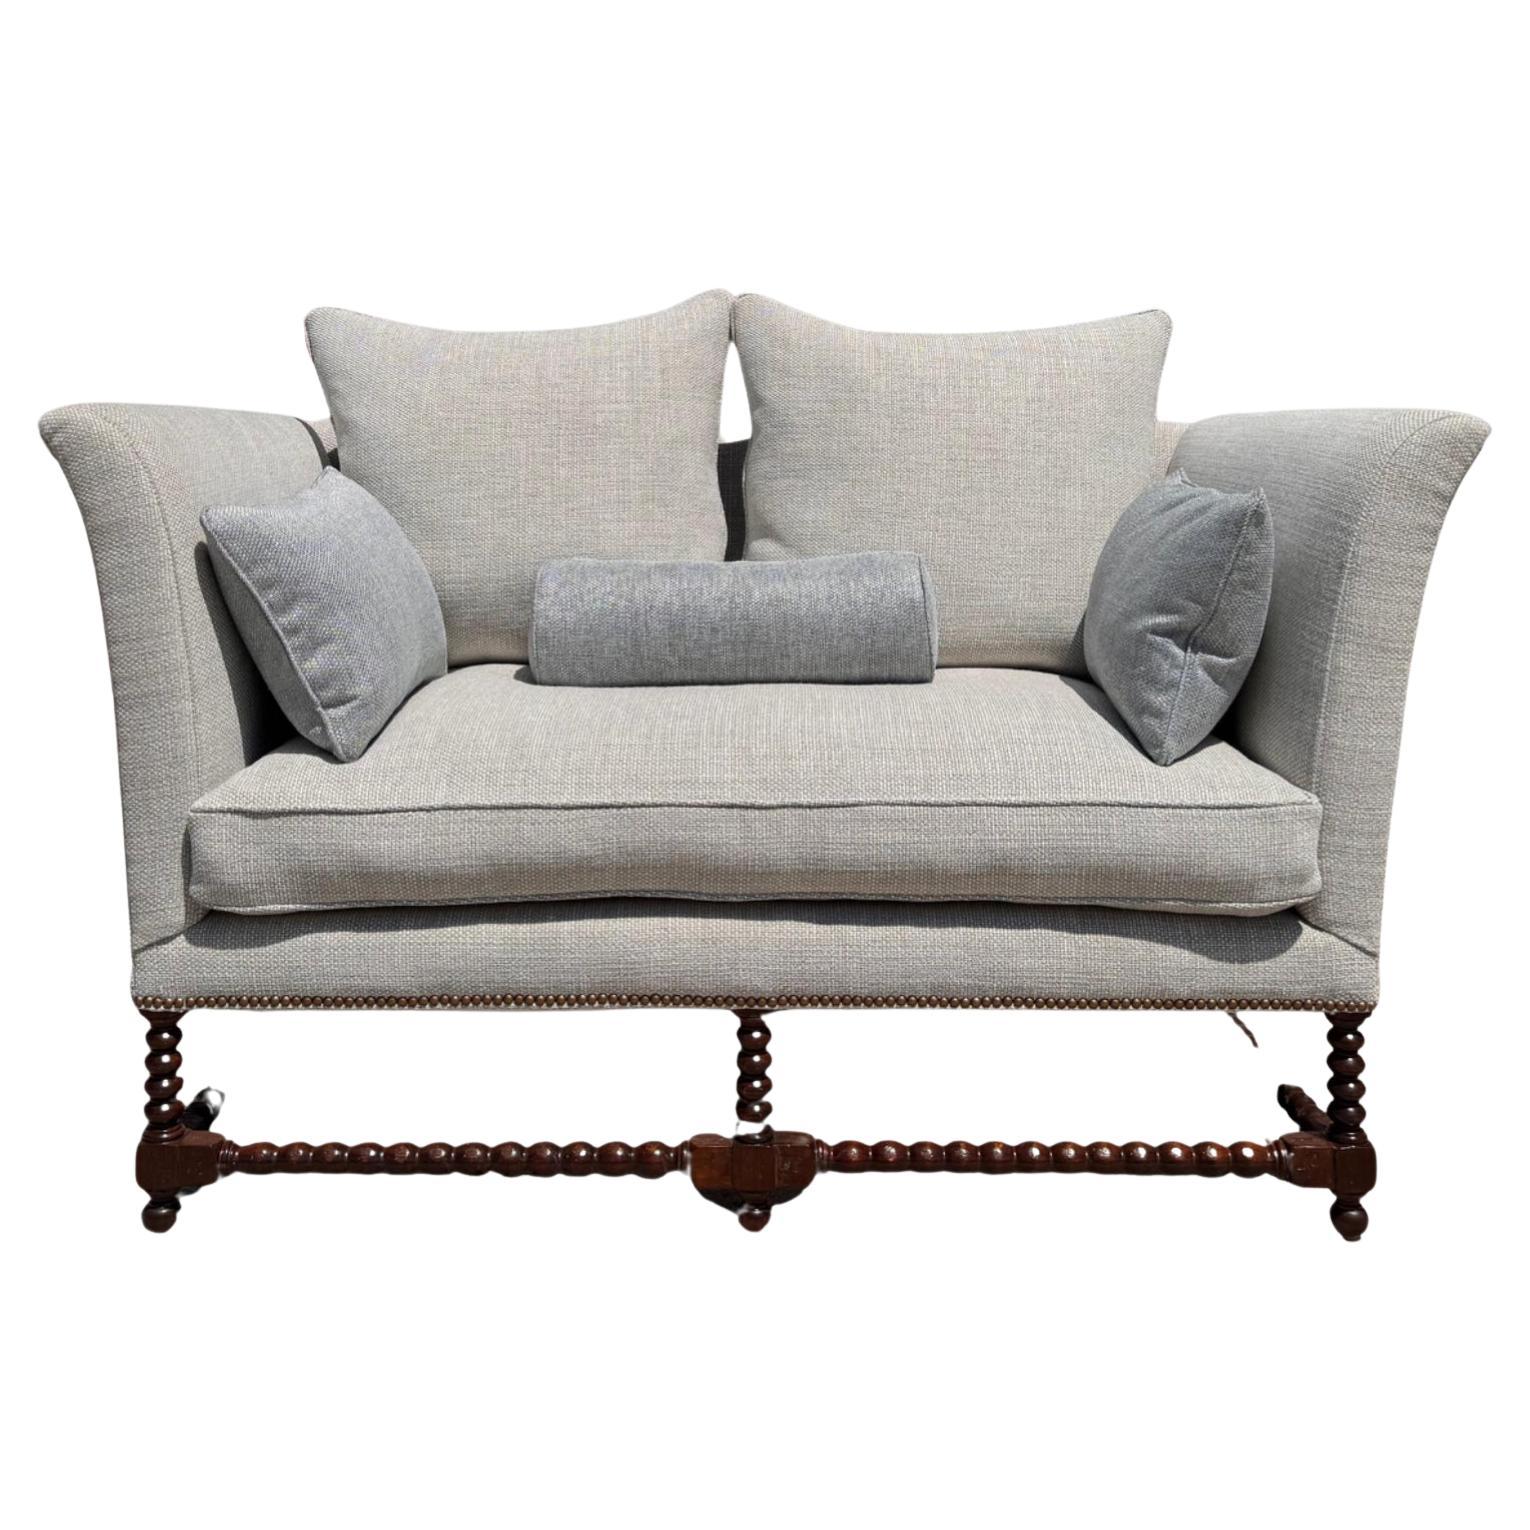 18th C Style Italian Walnut Down Sofa Settee by Randy Esada Designs